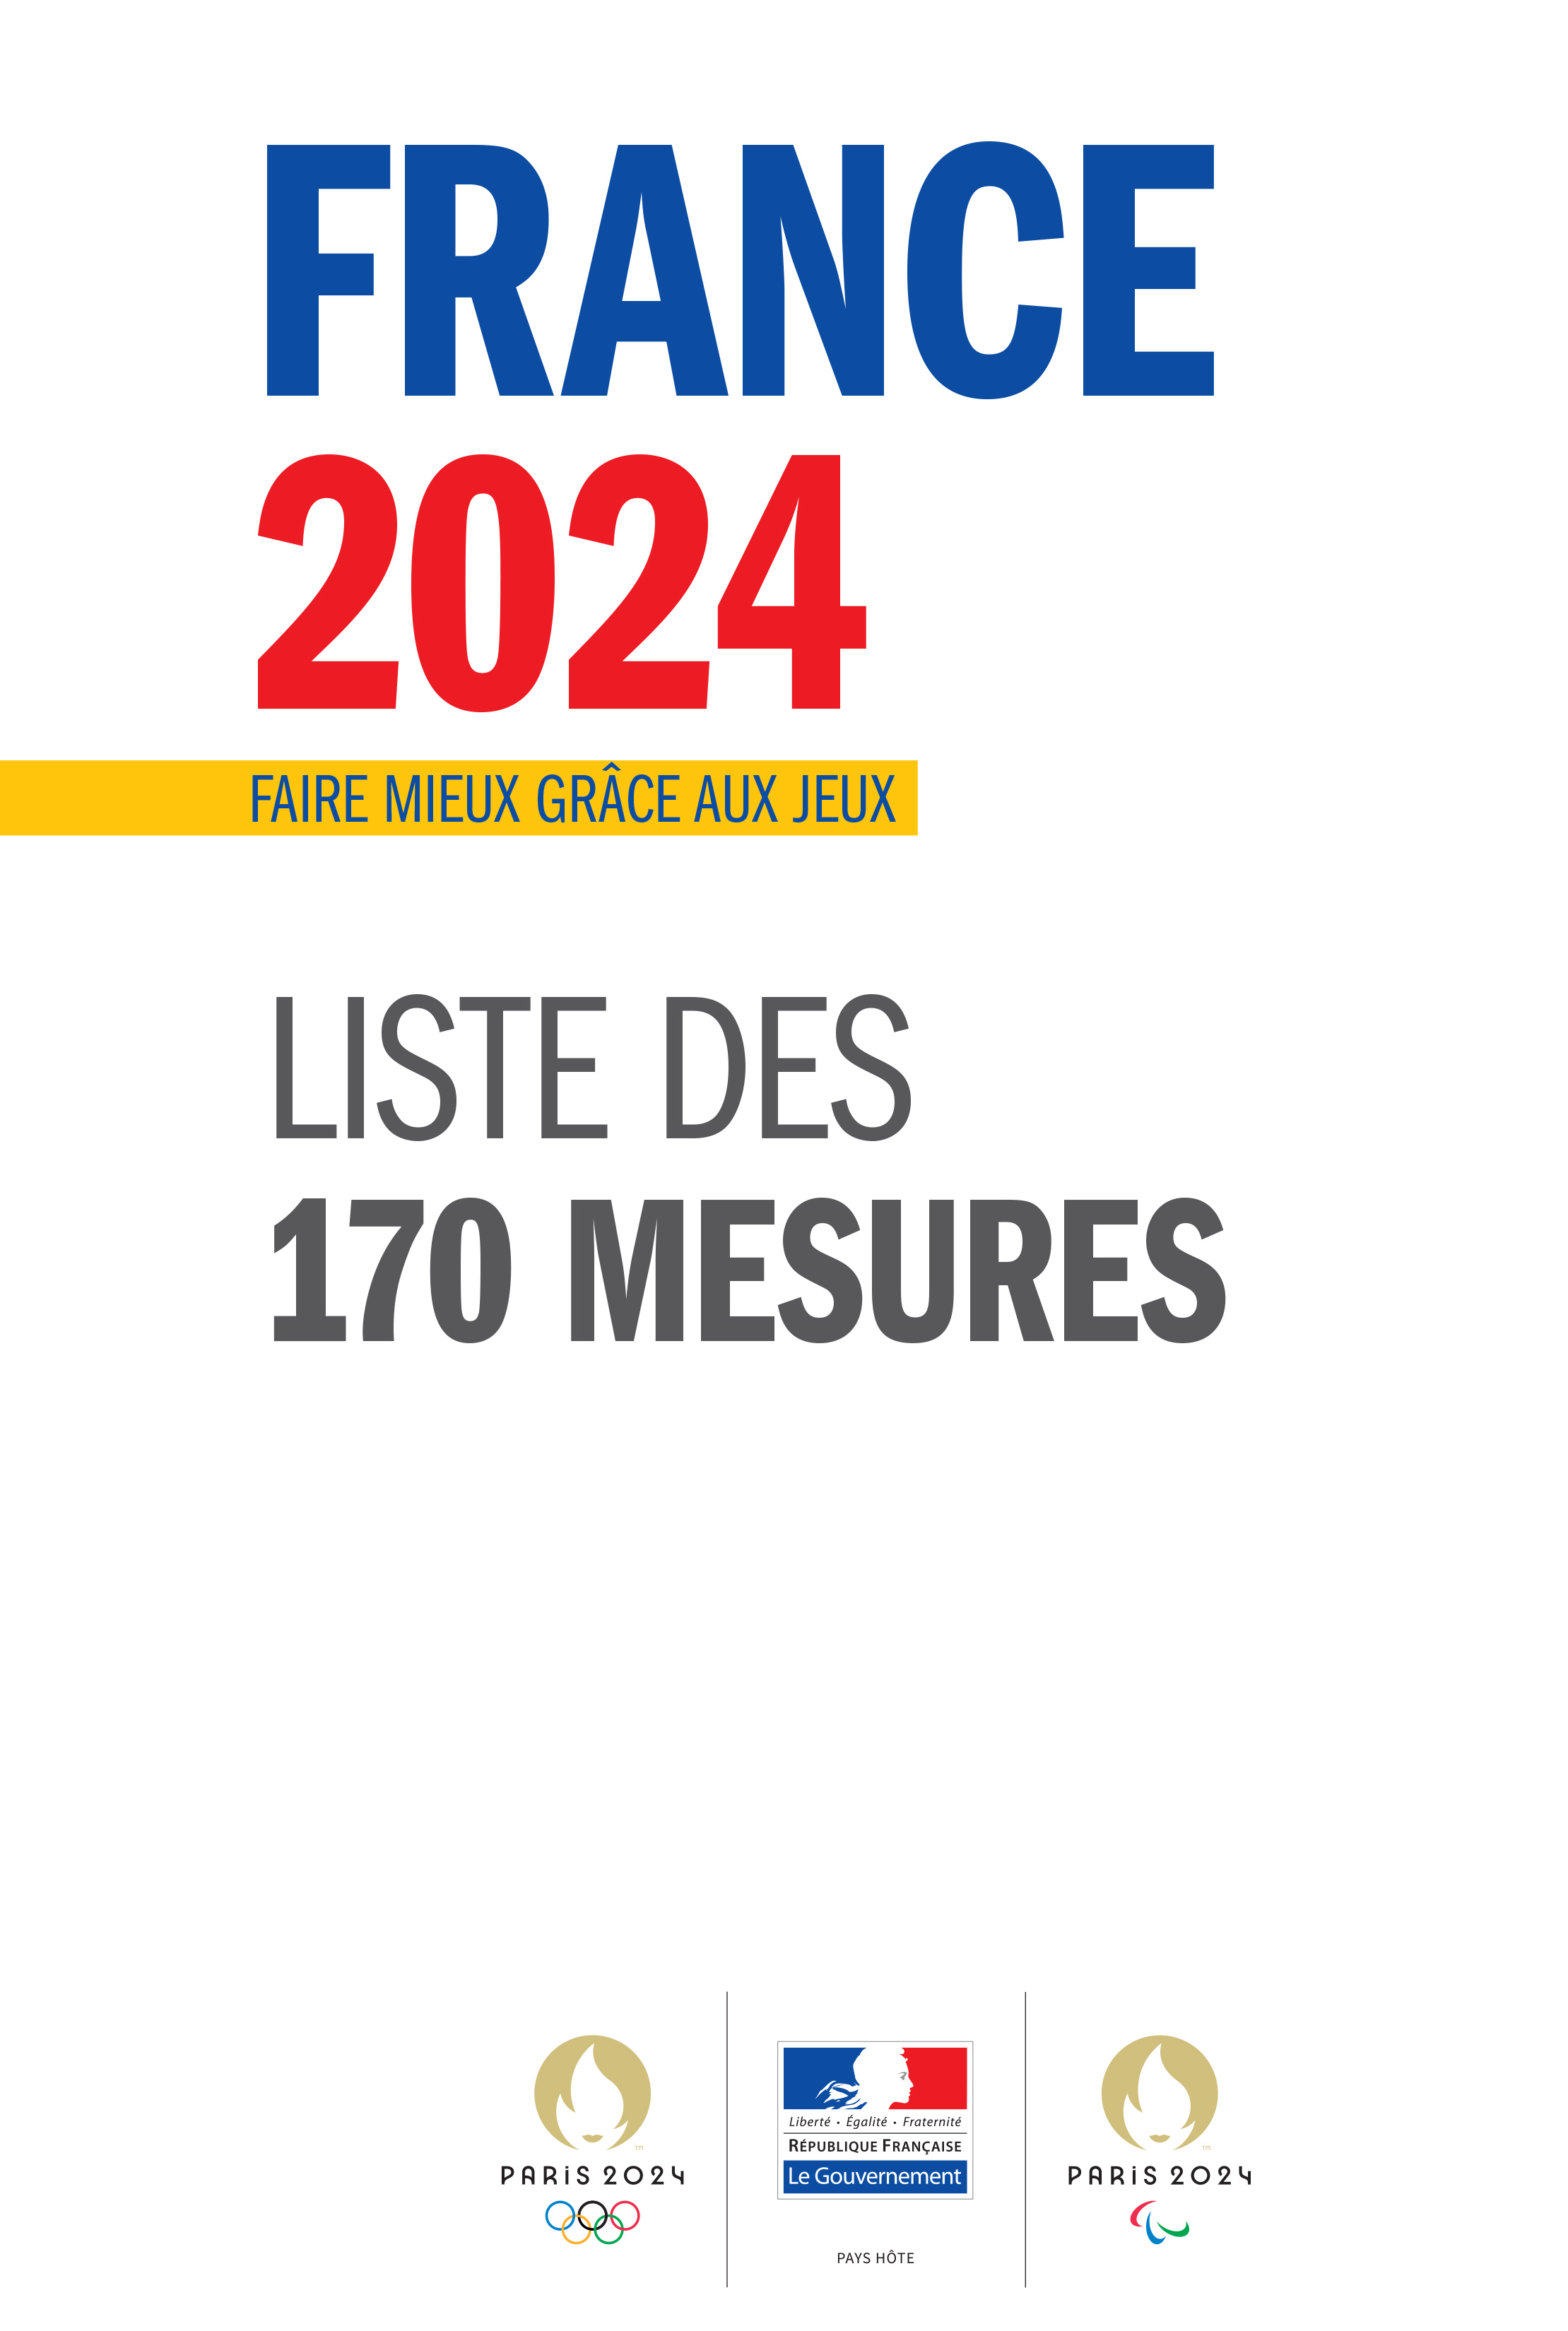 Héritage des Jeux Olympiques et Paralympiques de Paris 2024